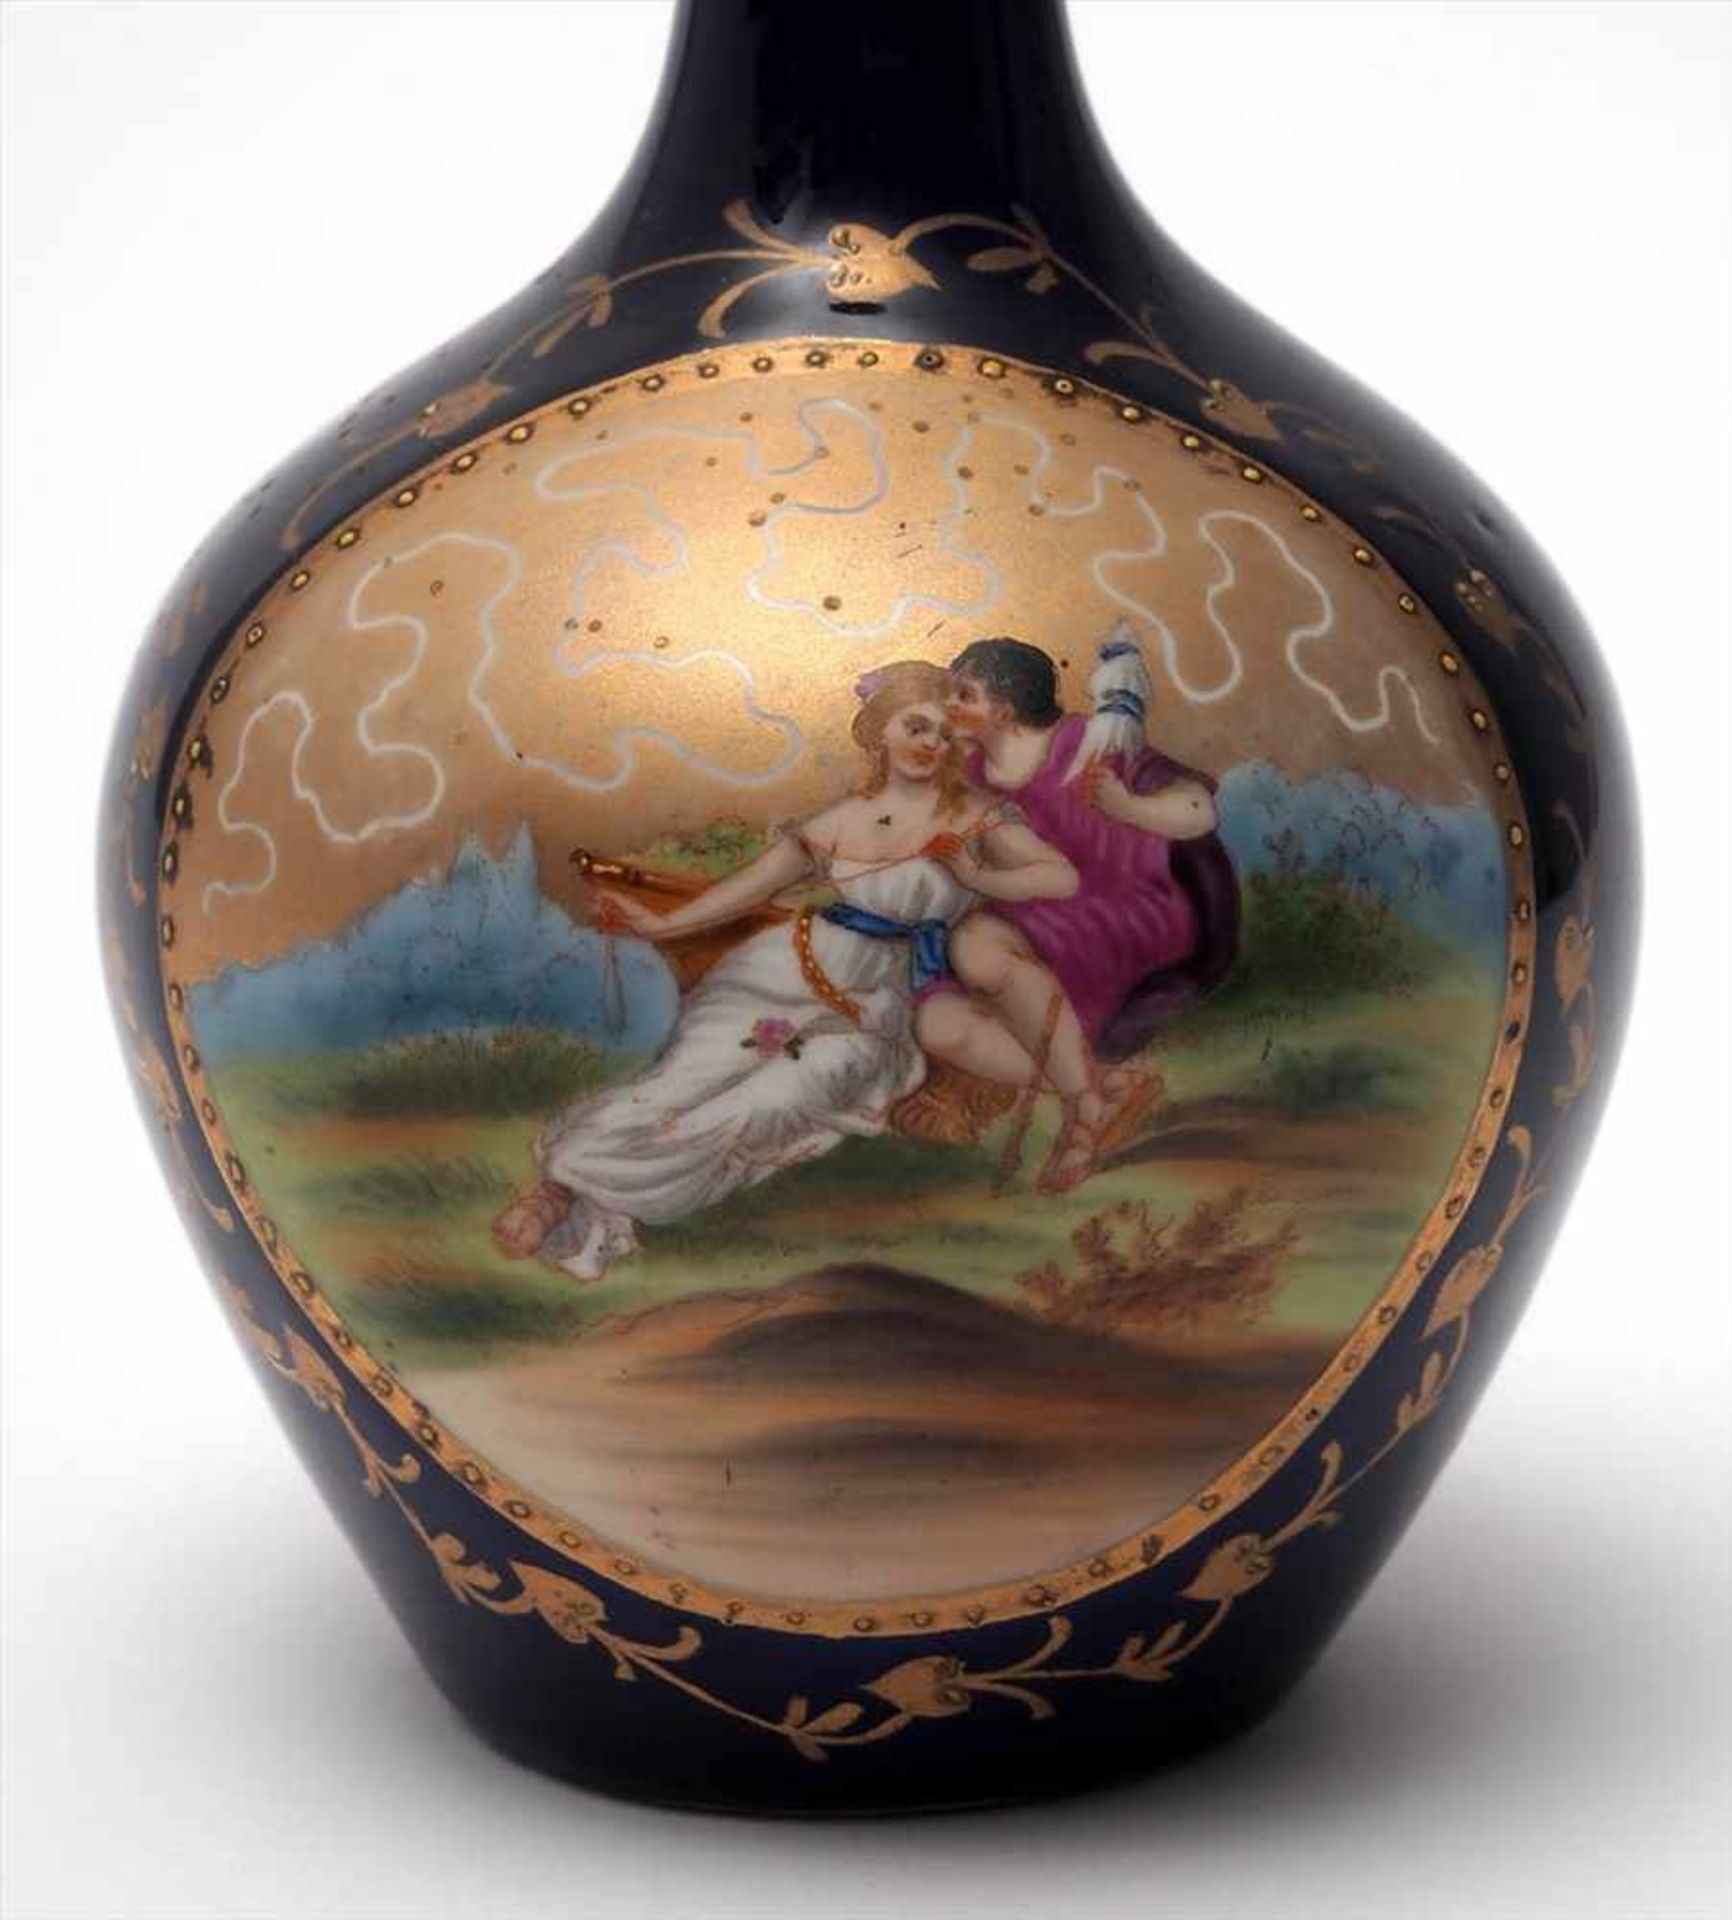 Sechs Teile Porzellan, kobaltblauZwei Vasen, eine keulenförmig (H.20,5cm), eine mit ausgestelltem, - Bild 2 aus 3